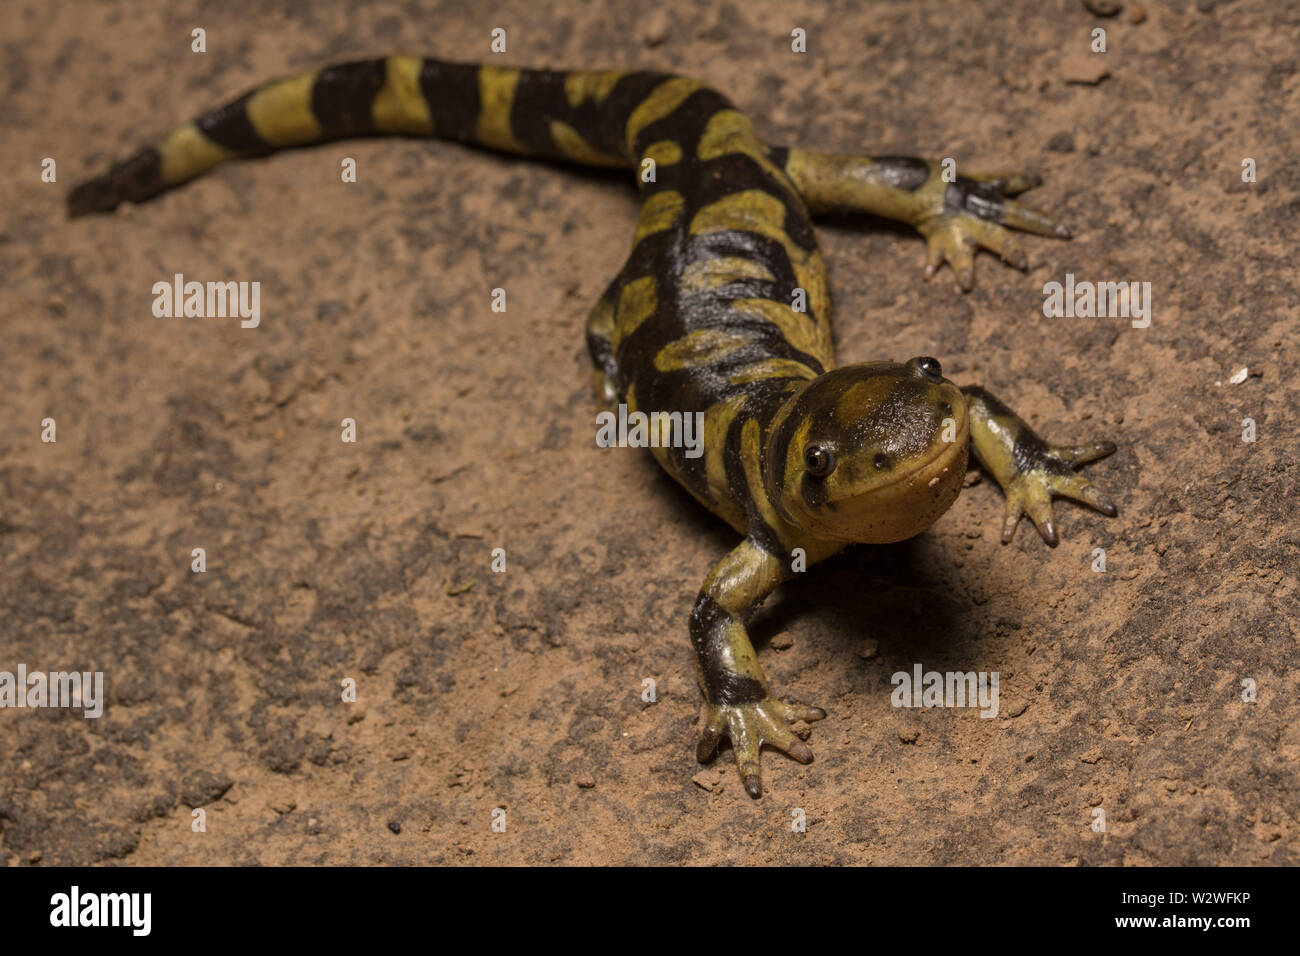 Impedida de salamandras tigre (Ambystoma mavortium mavortium) del Condado de Jefferson, Colorado, Estados Unidos. Foto de stock